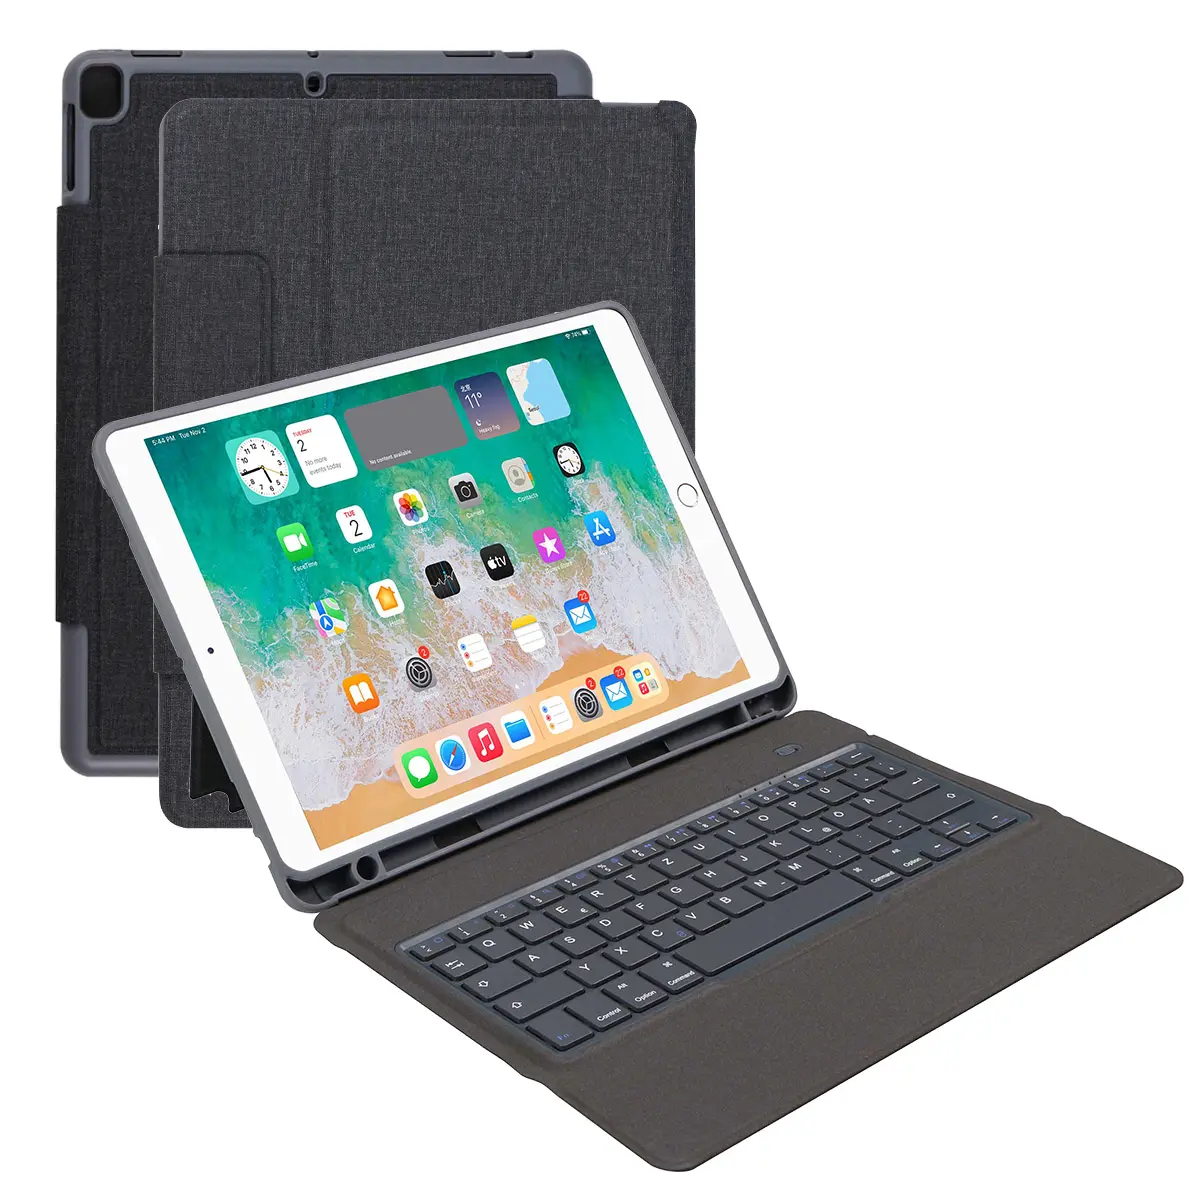 IPad7 iPad8 iPad9 iPad hava akıllı klavye ipad klavye için Bluetooth klavye ipad için set